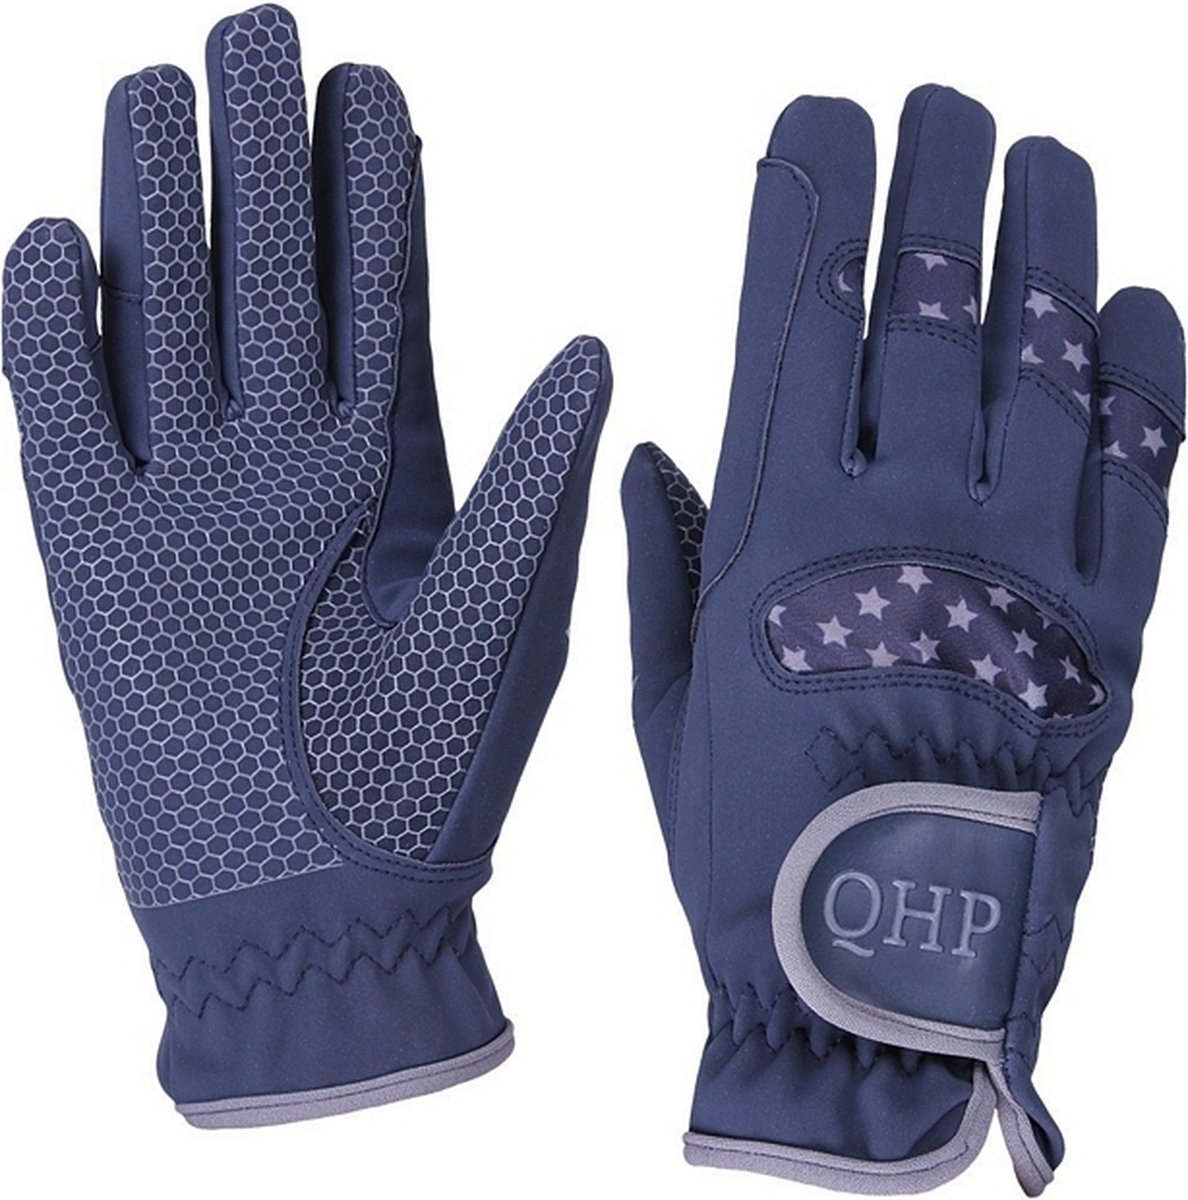 QHP Handschoen Multi Star - maat 12 - navy/grey